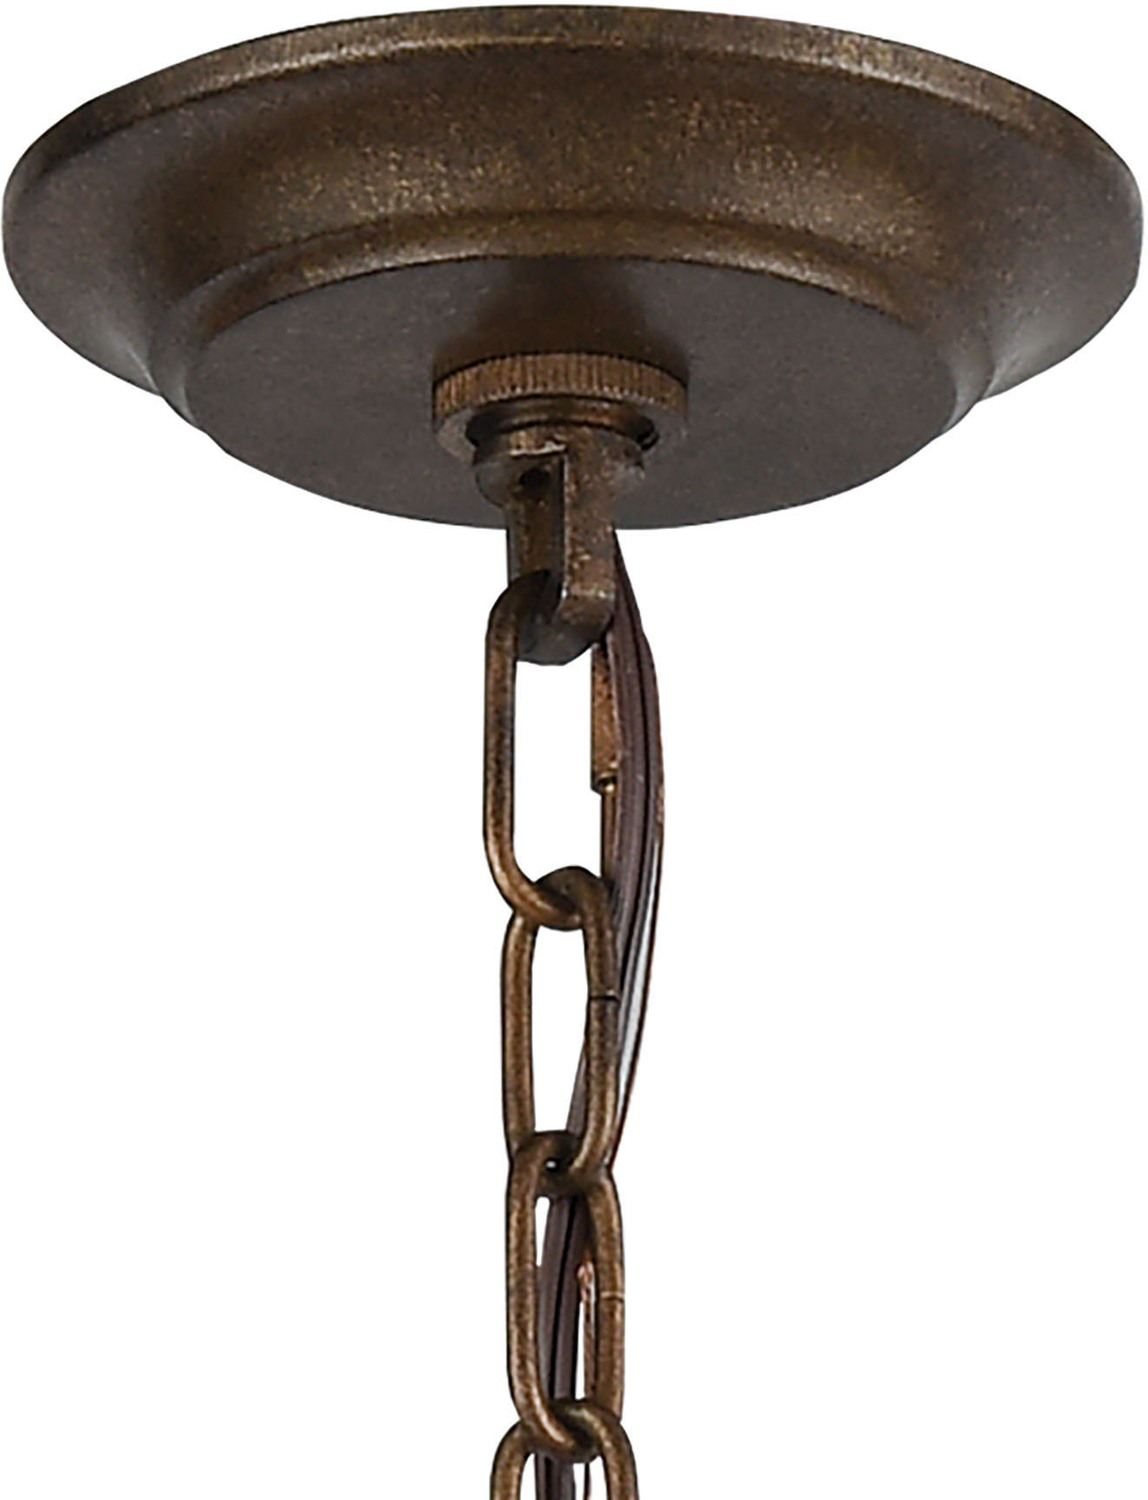 6 lamp ceiling light ELK Lighting Chandelier Chandelier Weathered Bronze Traditional